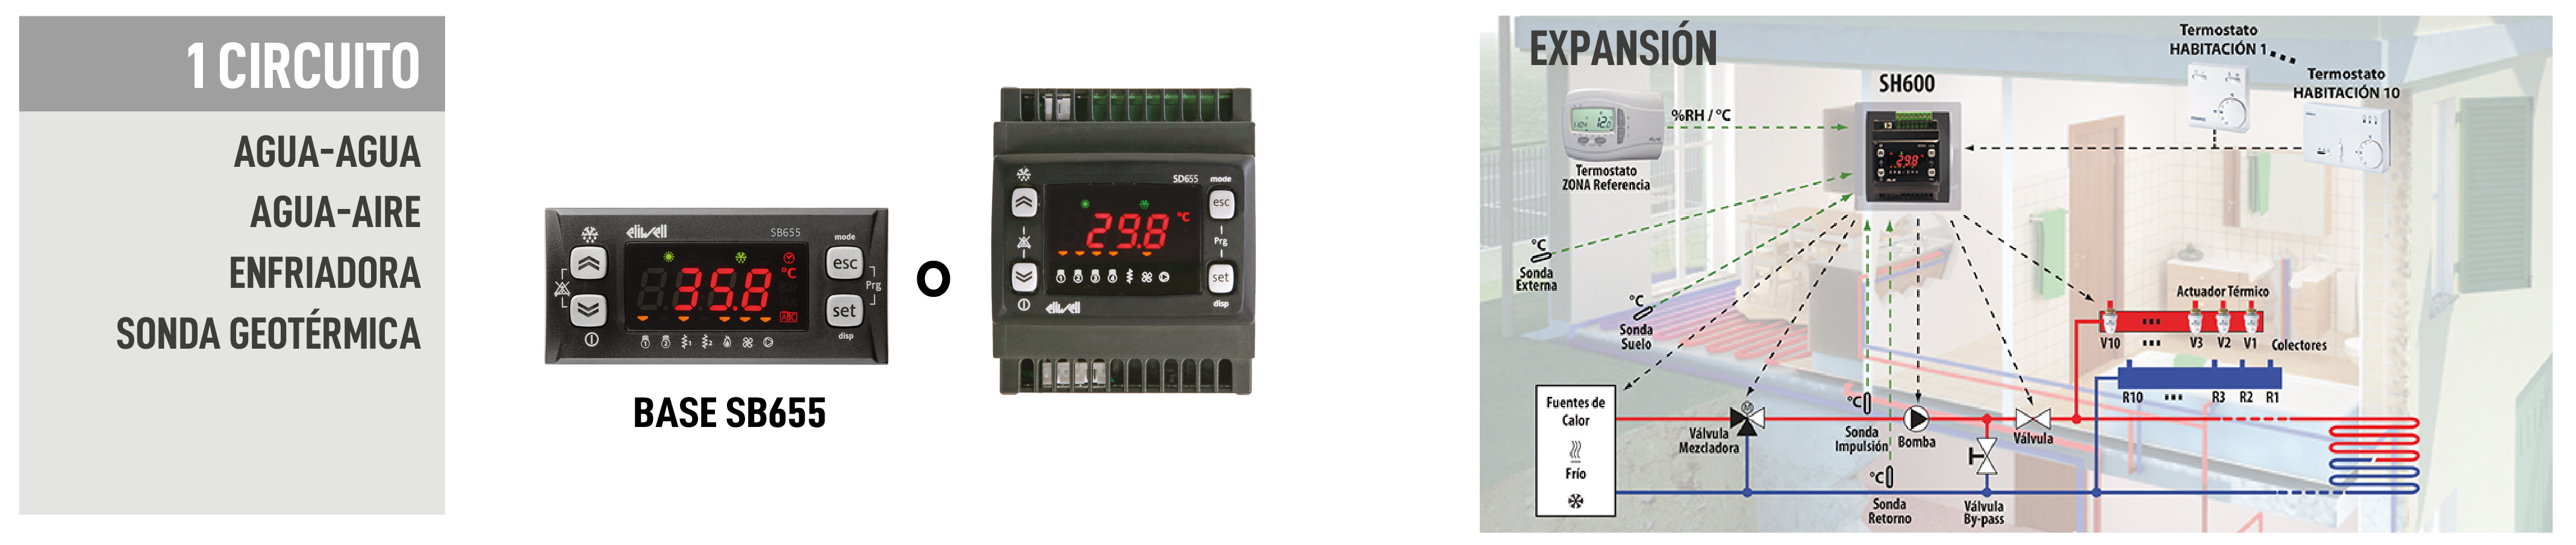 Aplicaciones del Energy Flex, controlador universal para climatización. un circuito Agua-Agua/Agua-Aire/ Enfriadora/ sonda Geotérmica